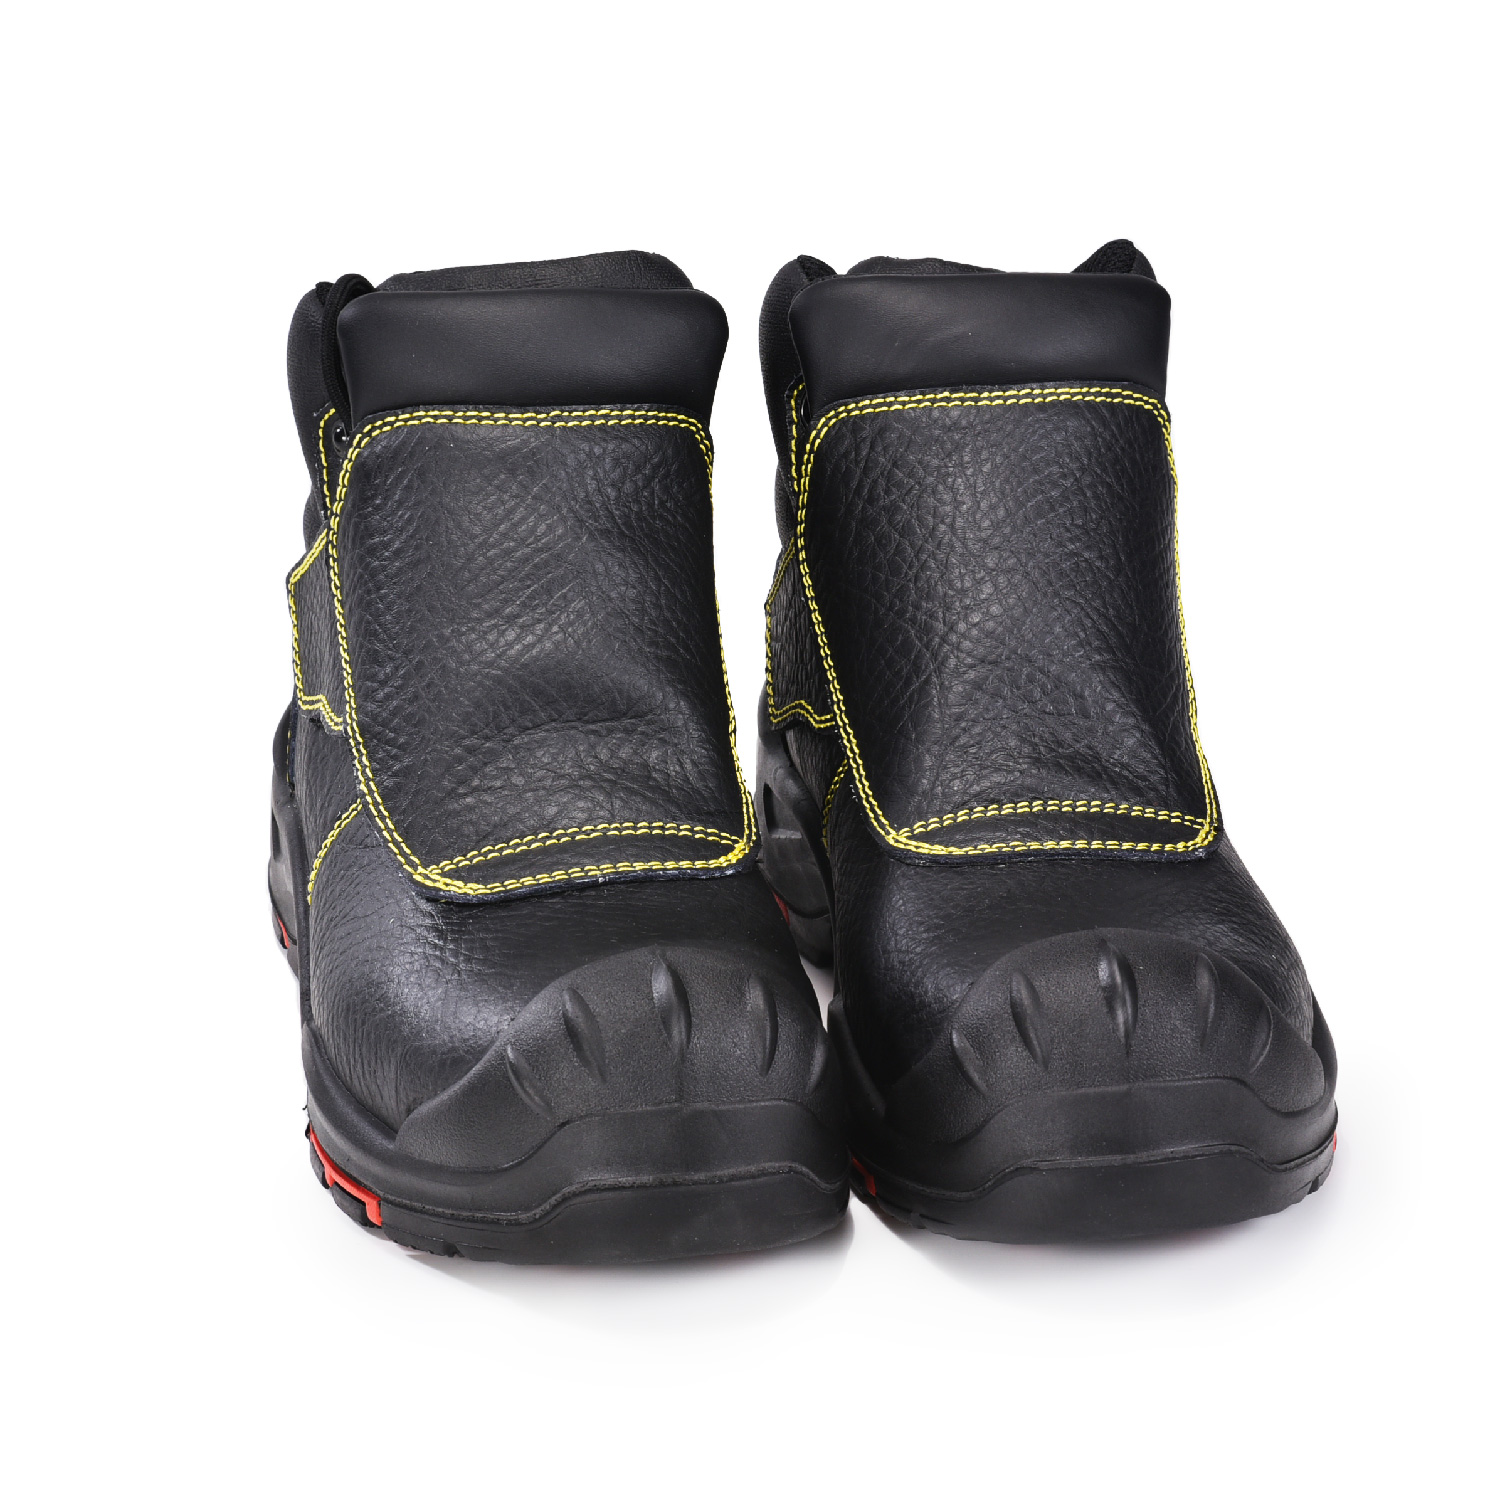 Прочные защитные сварочные ботинки для сварщиков M-8387 новые